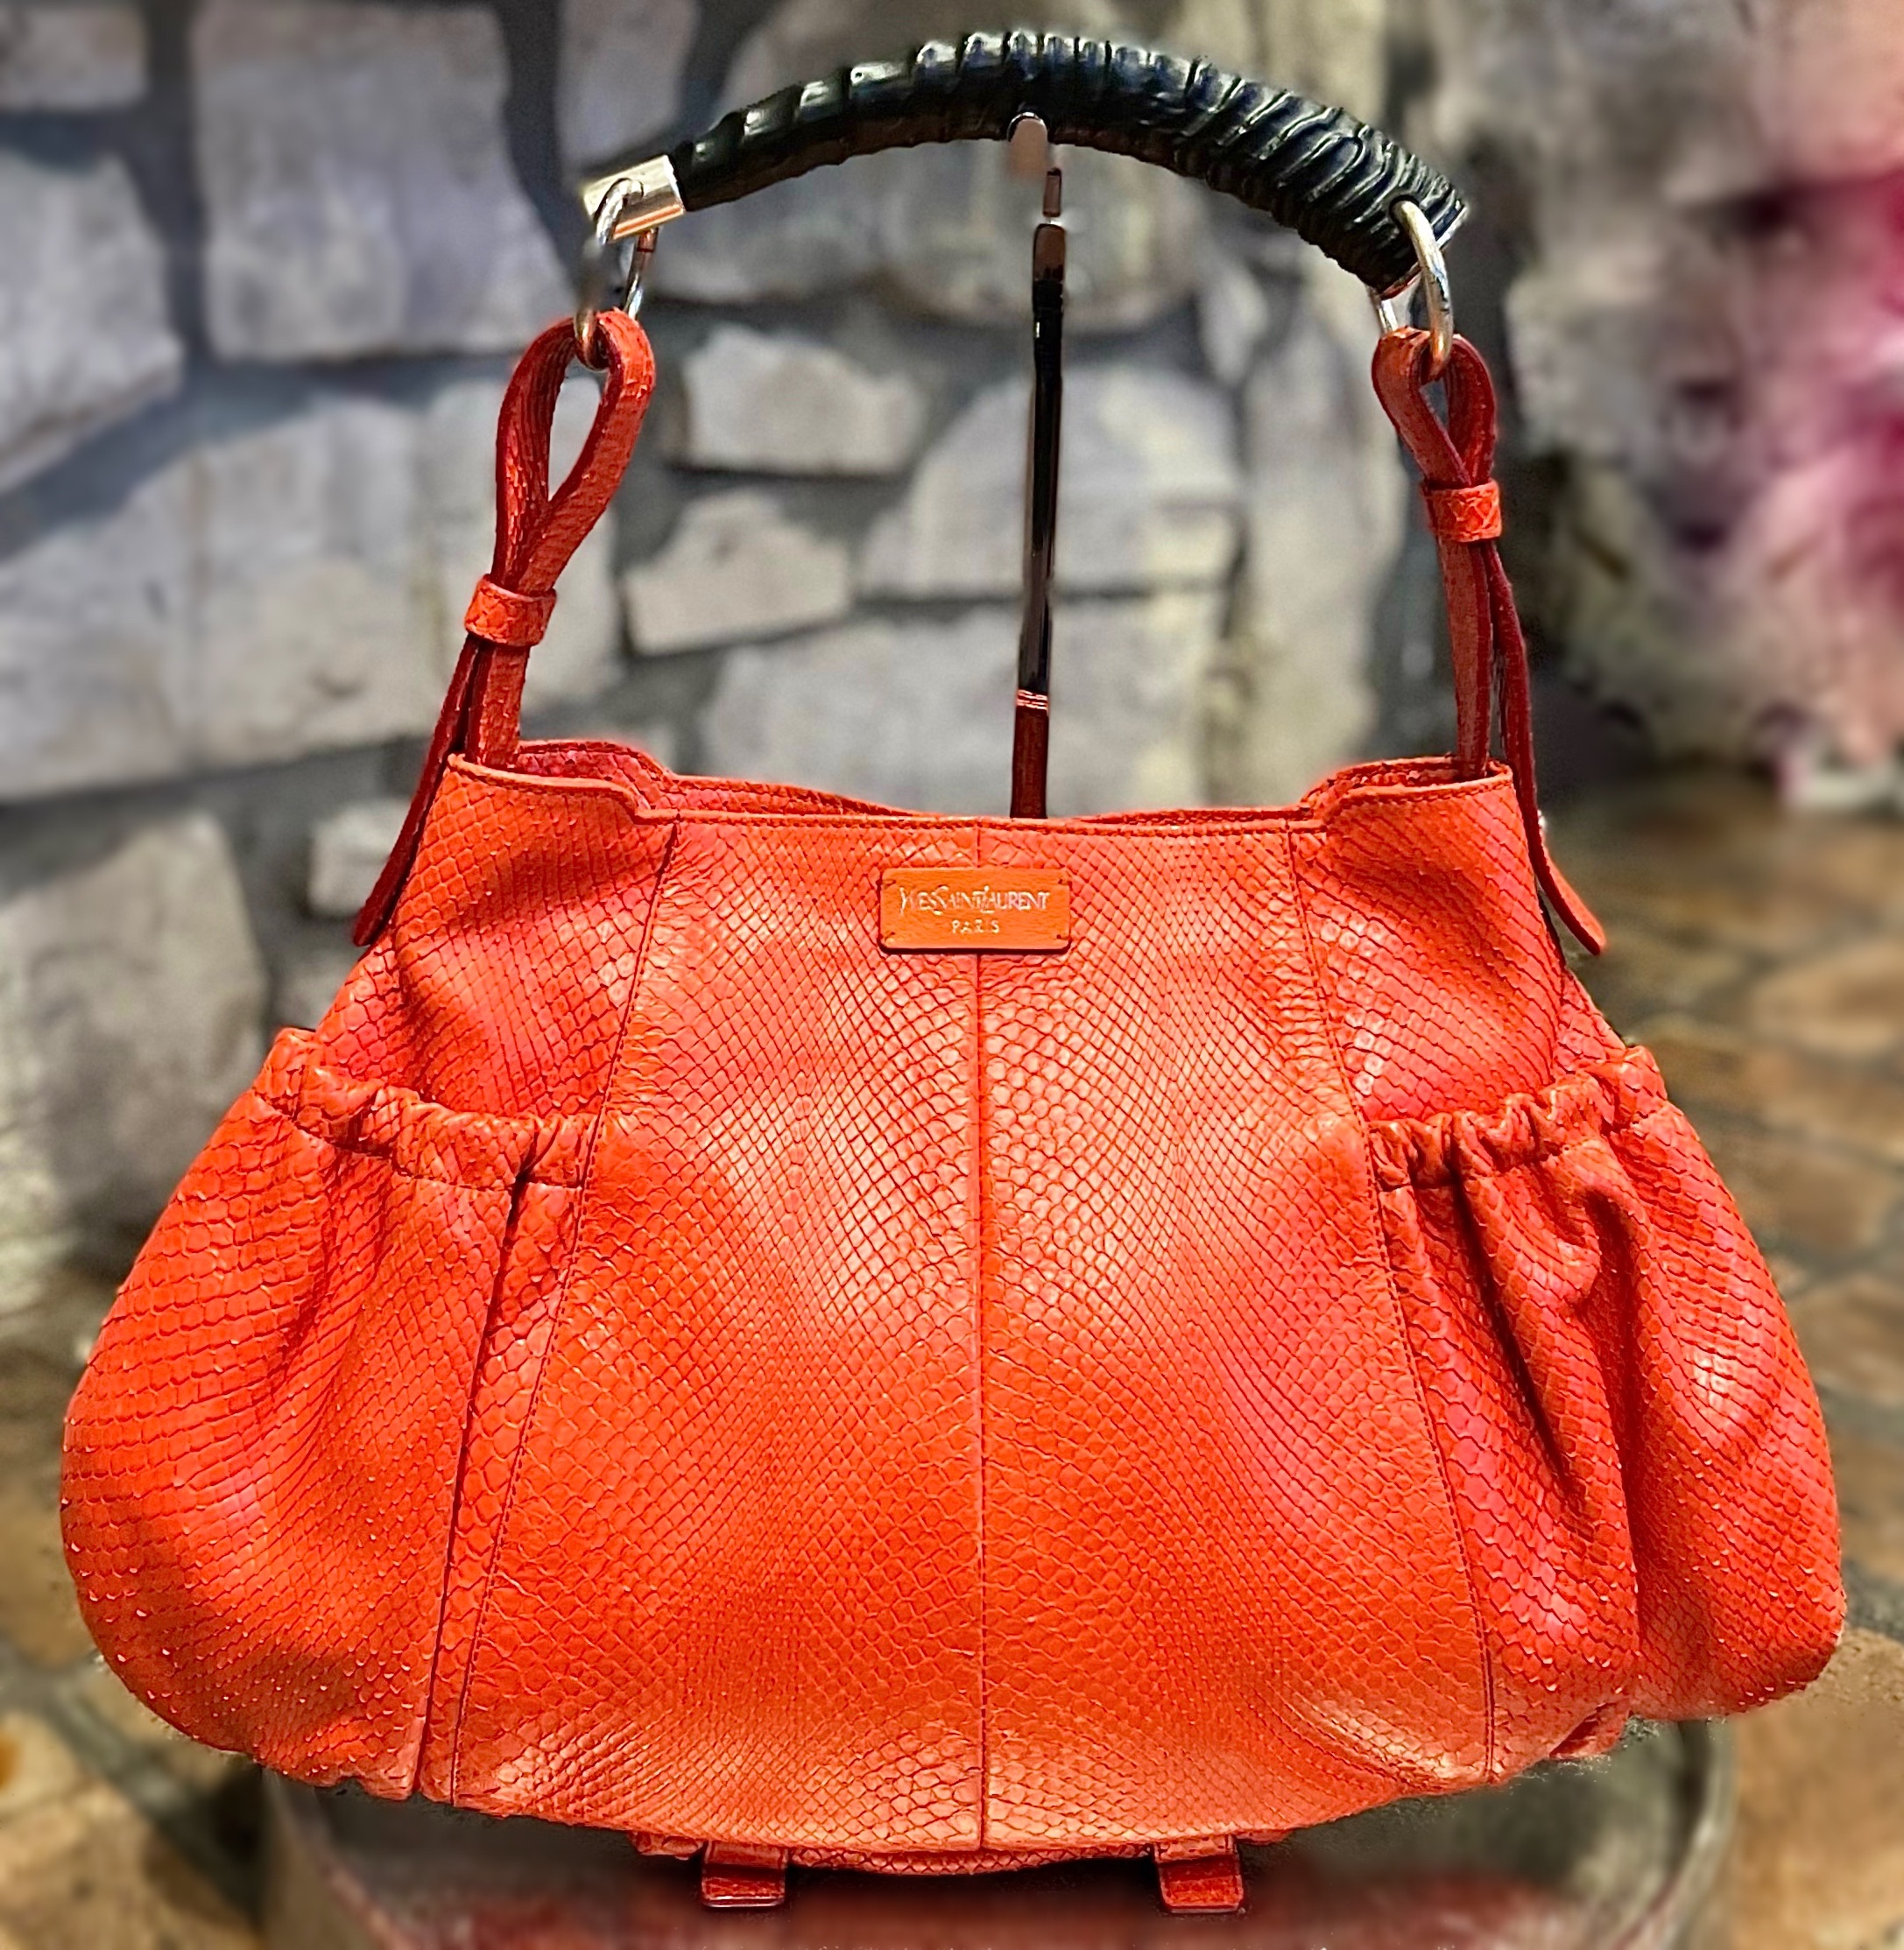 Yves Saint Laurent Handbags for sale in Houston, Texas